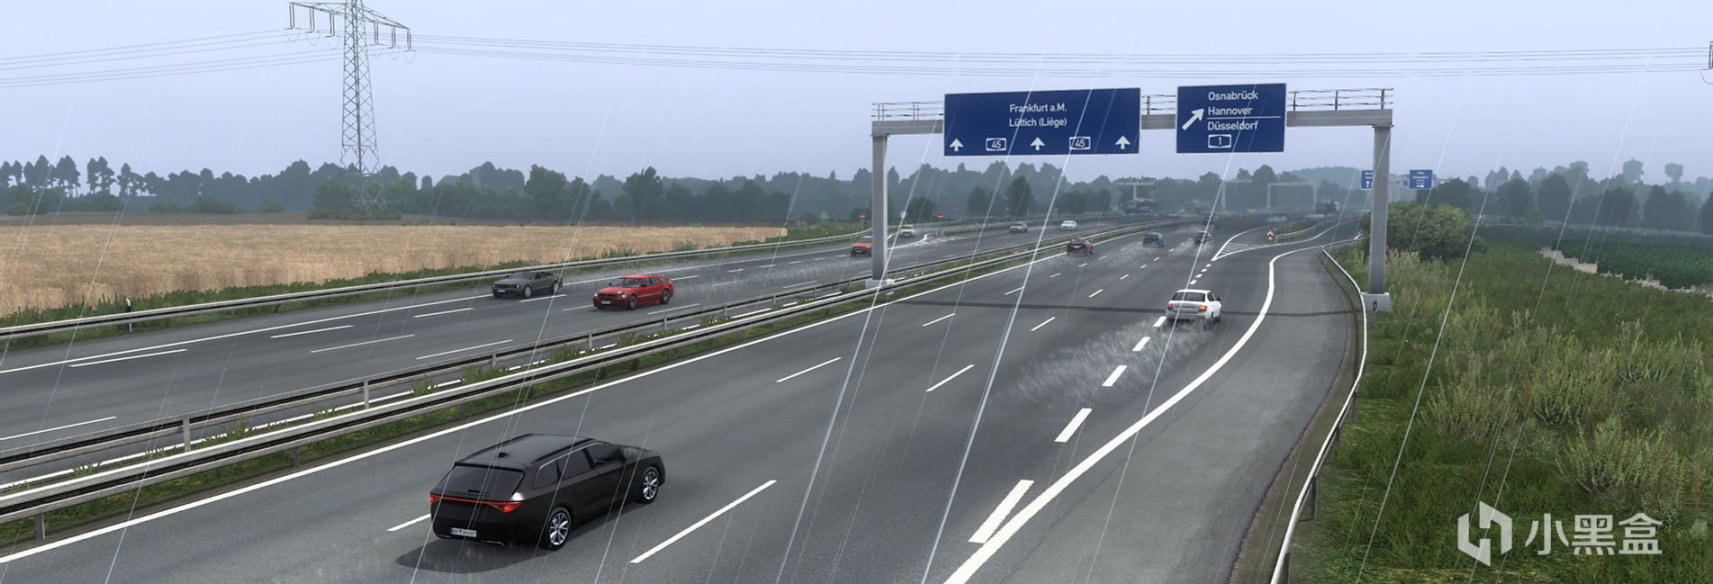 【欧洲卡车模拟2】MOD推荐【D.B Creation】D.B团队的AI交通和其他游戏内容模组-第28张